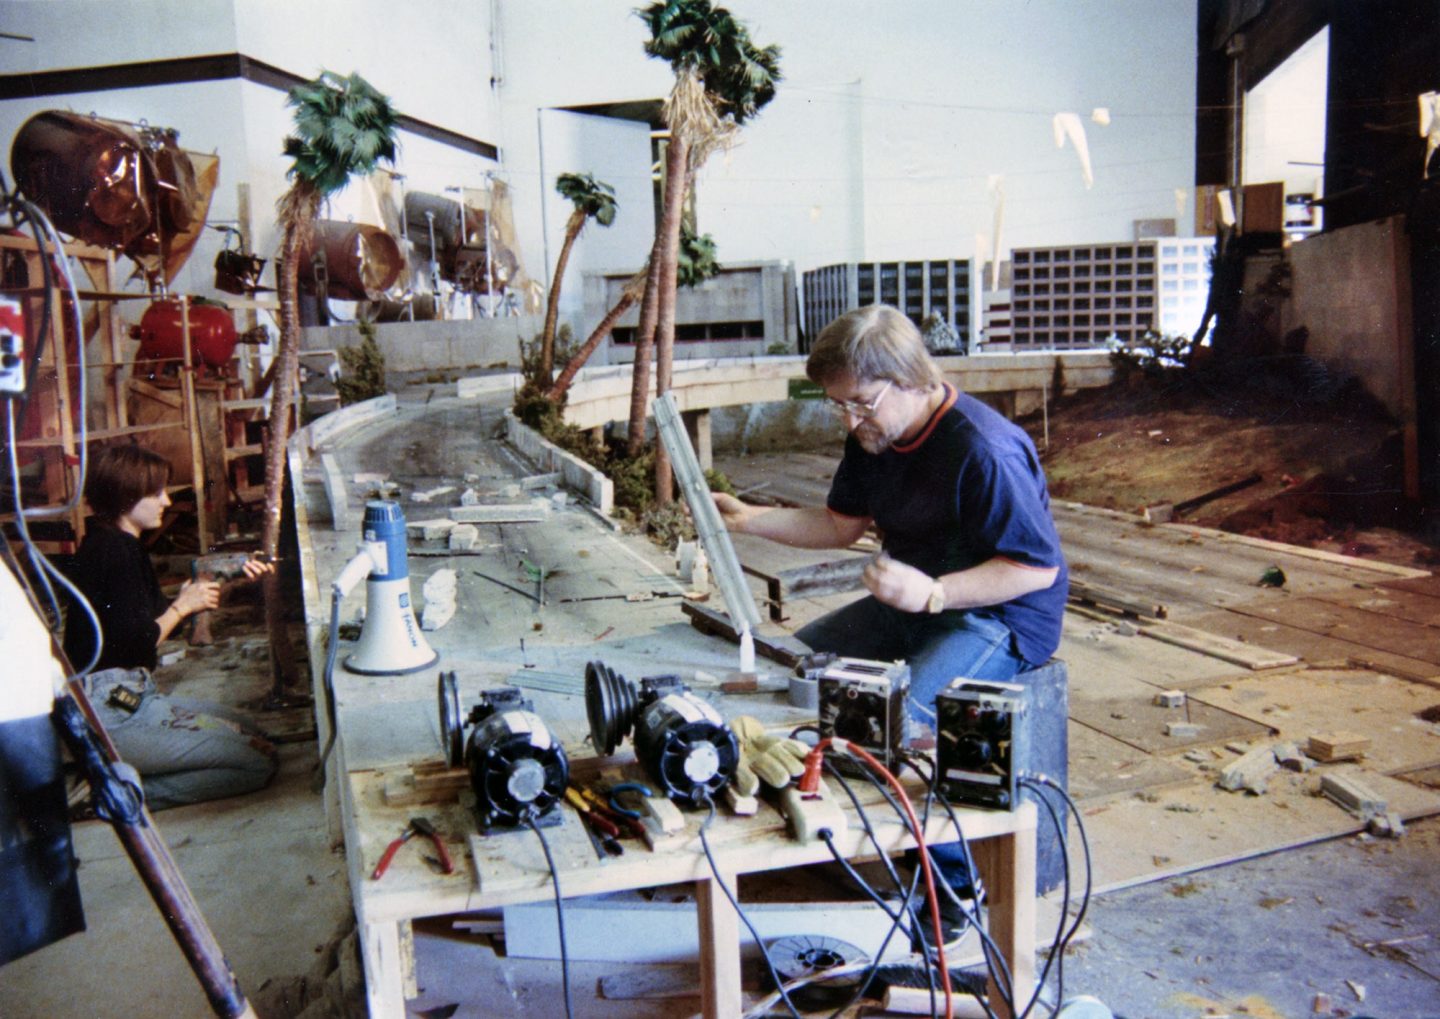 Dennis Skotak (foreground) works on the LA miniature, with Samantha Stevens at left.